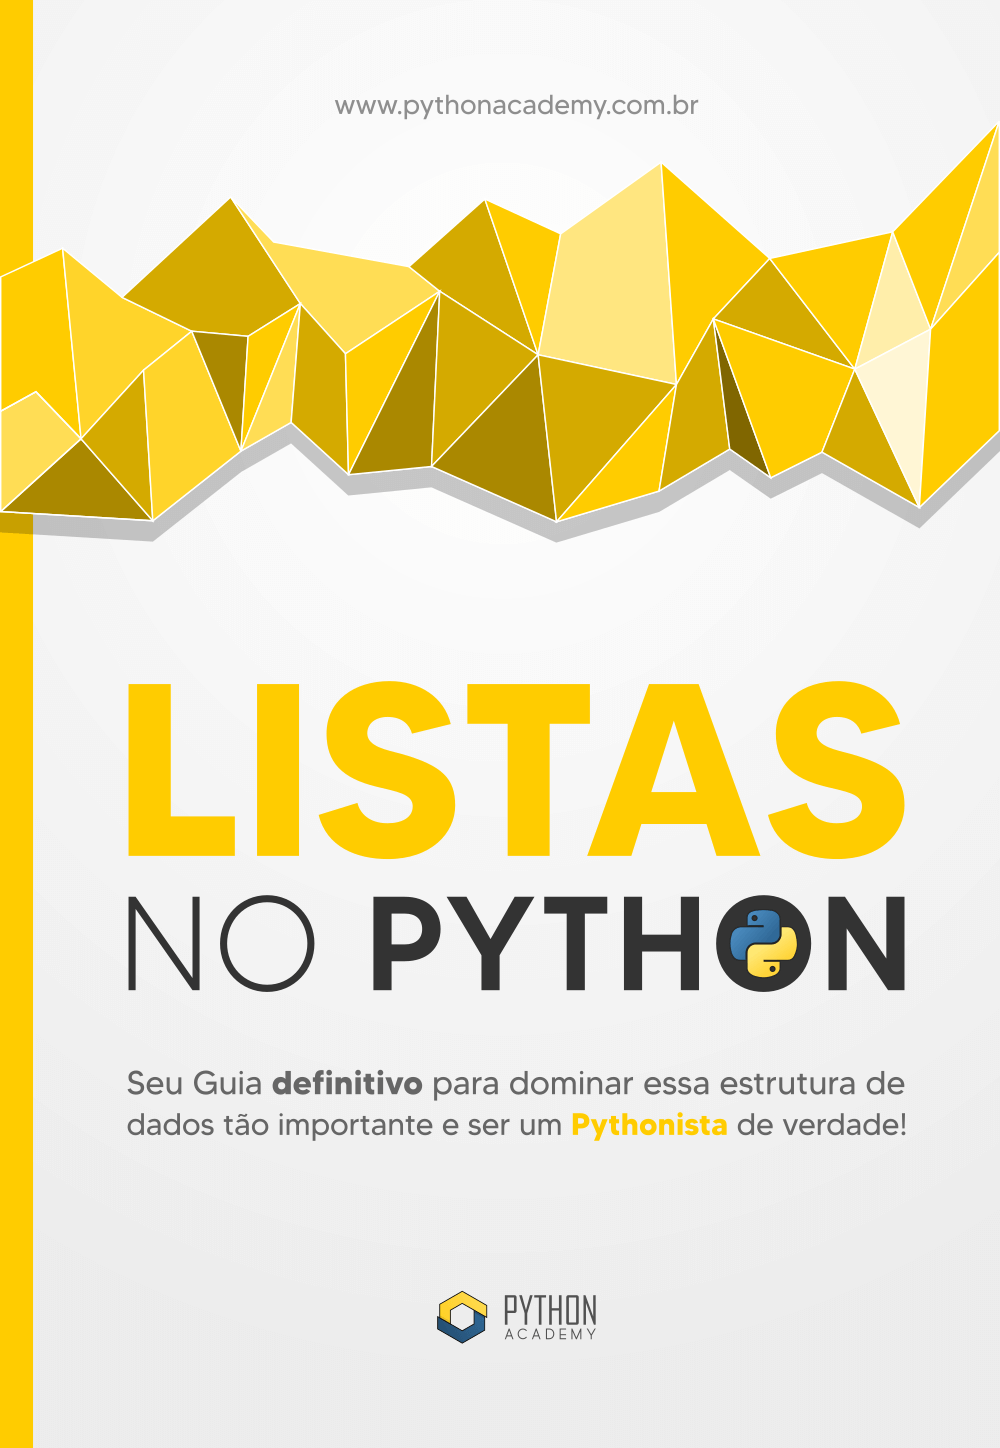 Listas no Python